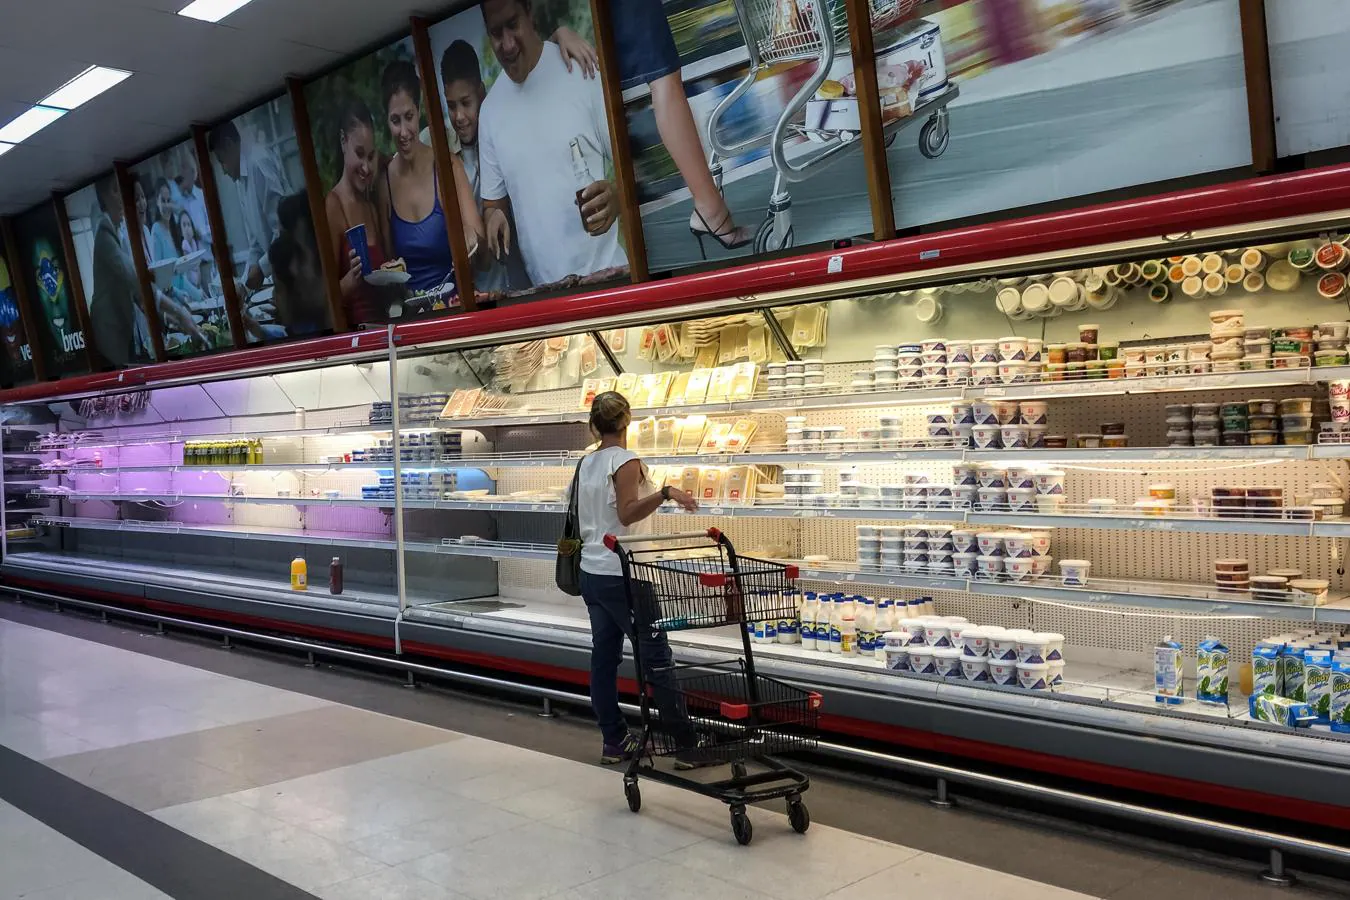 Dos semanas después de la puesta en marcha del nuevo plan económico de Maduro, la situación en Venezuela es desoladora. Las estanterías de supermercados y farmacias están vacías y cientos de trabajadores pierden sus empleos. Familias enteras de venezolanos huyen de la escasez, la inflación y la inseguridad de su tierra natal. Bolivia, Colombia, Ecuador y Perú tratan de acogerlos. Hasta el alto comisionado de la ONU para los derechos humanos, Zeid Raad al-Hussein, considera que «es difícil pensar que Venezuela es un país democrático».